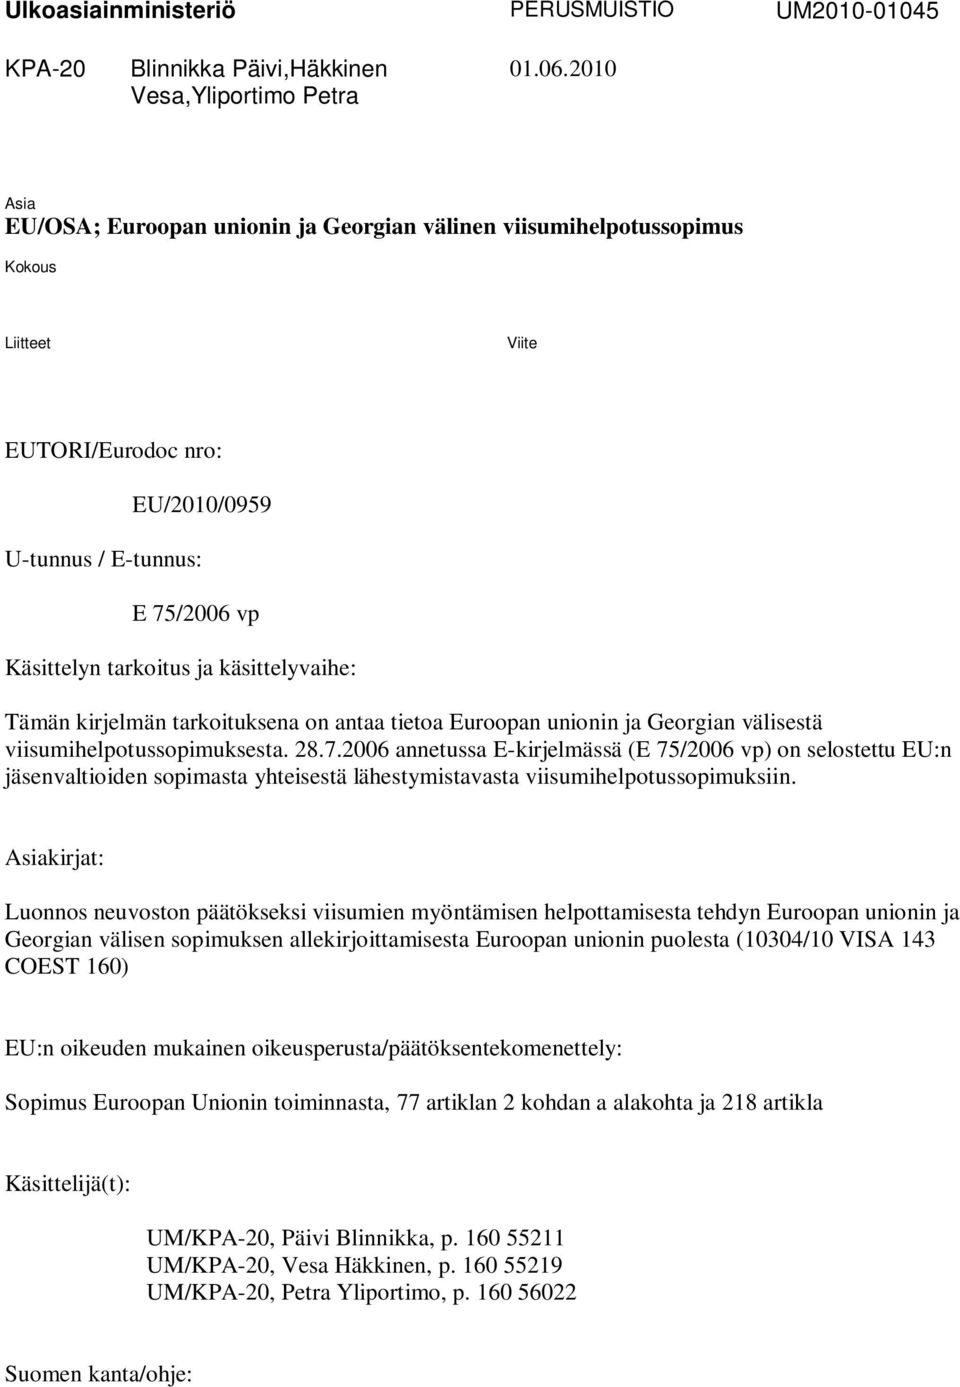 käsittelyvaihe: Tämän kirjelmän tarkoituksena on antaa tietoa Euroopan unionin ja Georgian välisestä viisumihelpotussopimuksesta. 28.7.